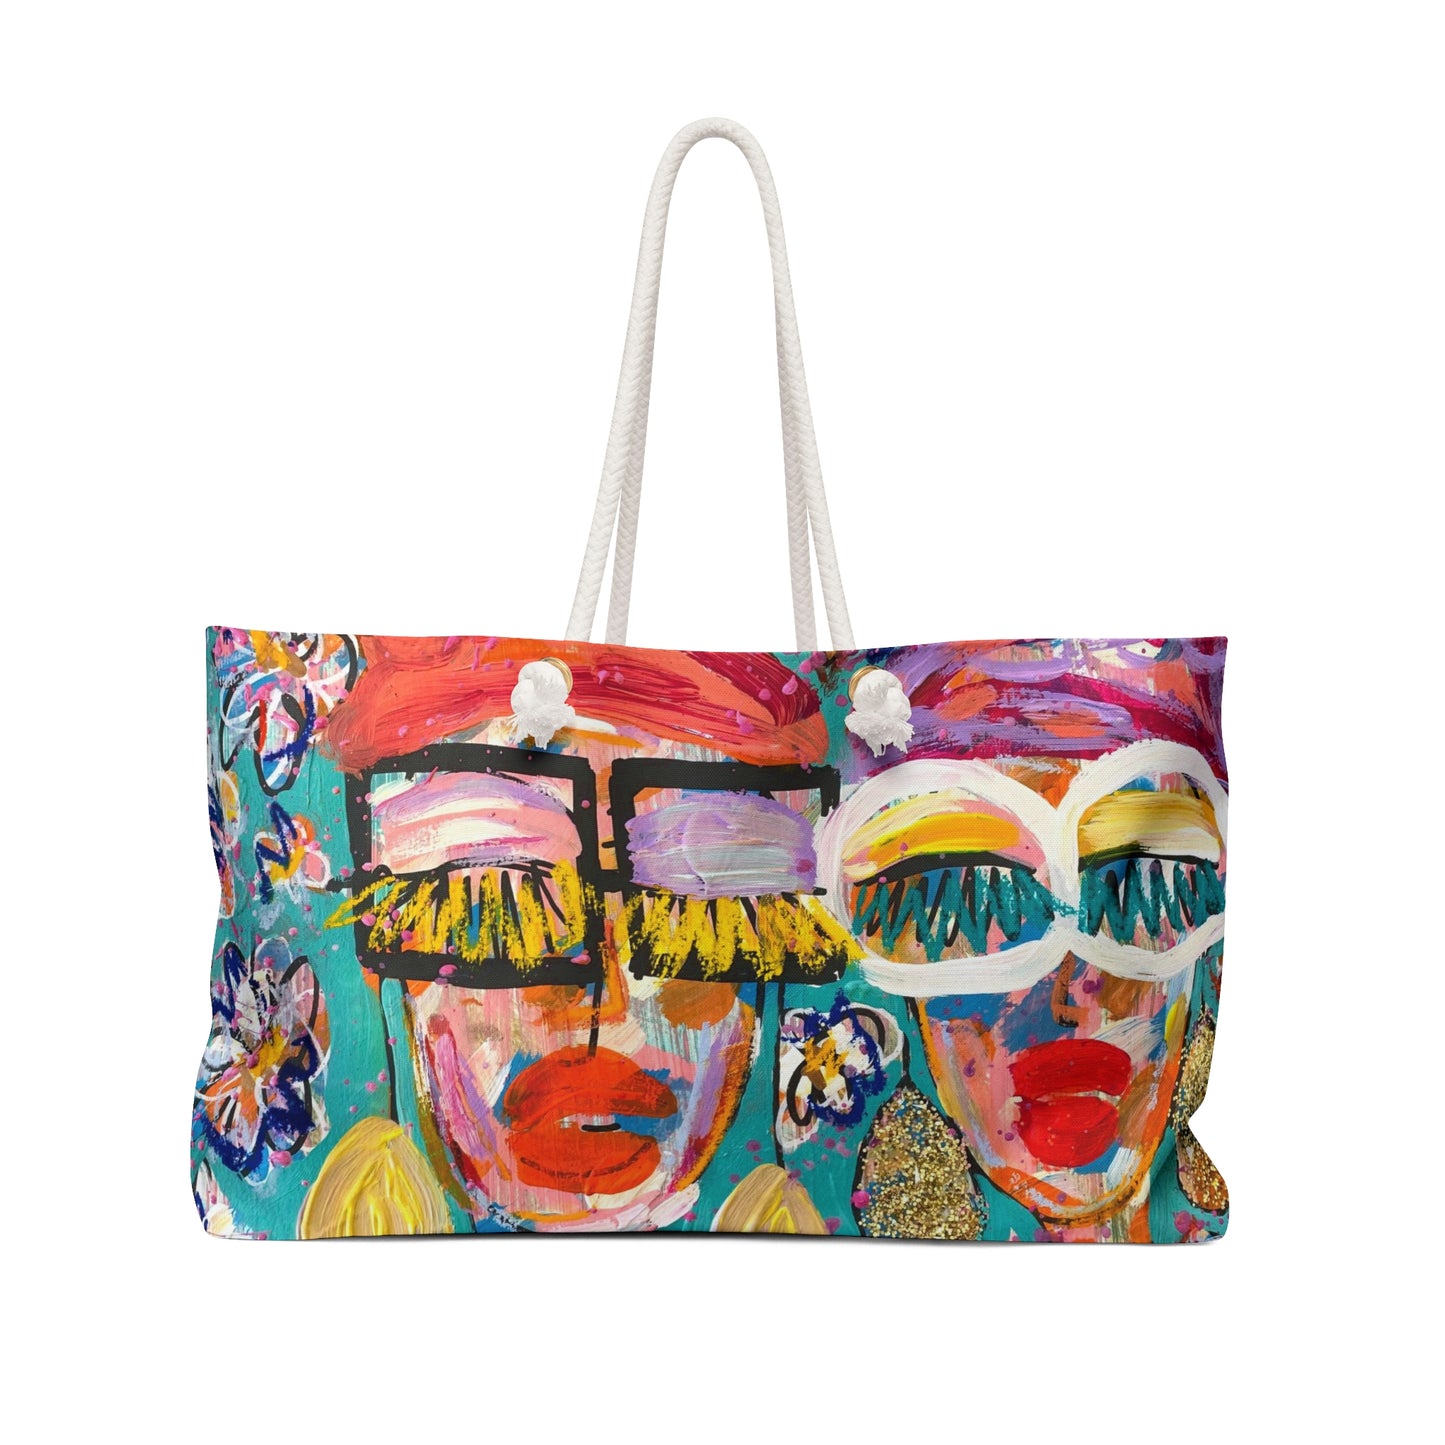 "May Flowers" Girl Talk Art Series Weekender Bag